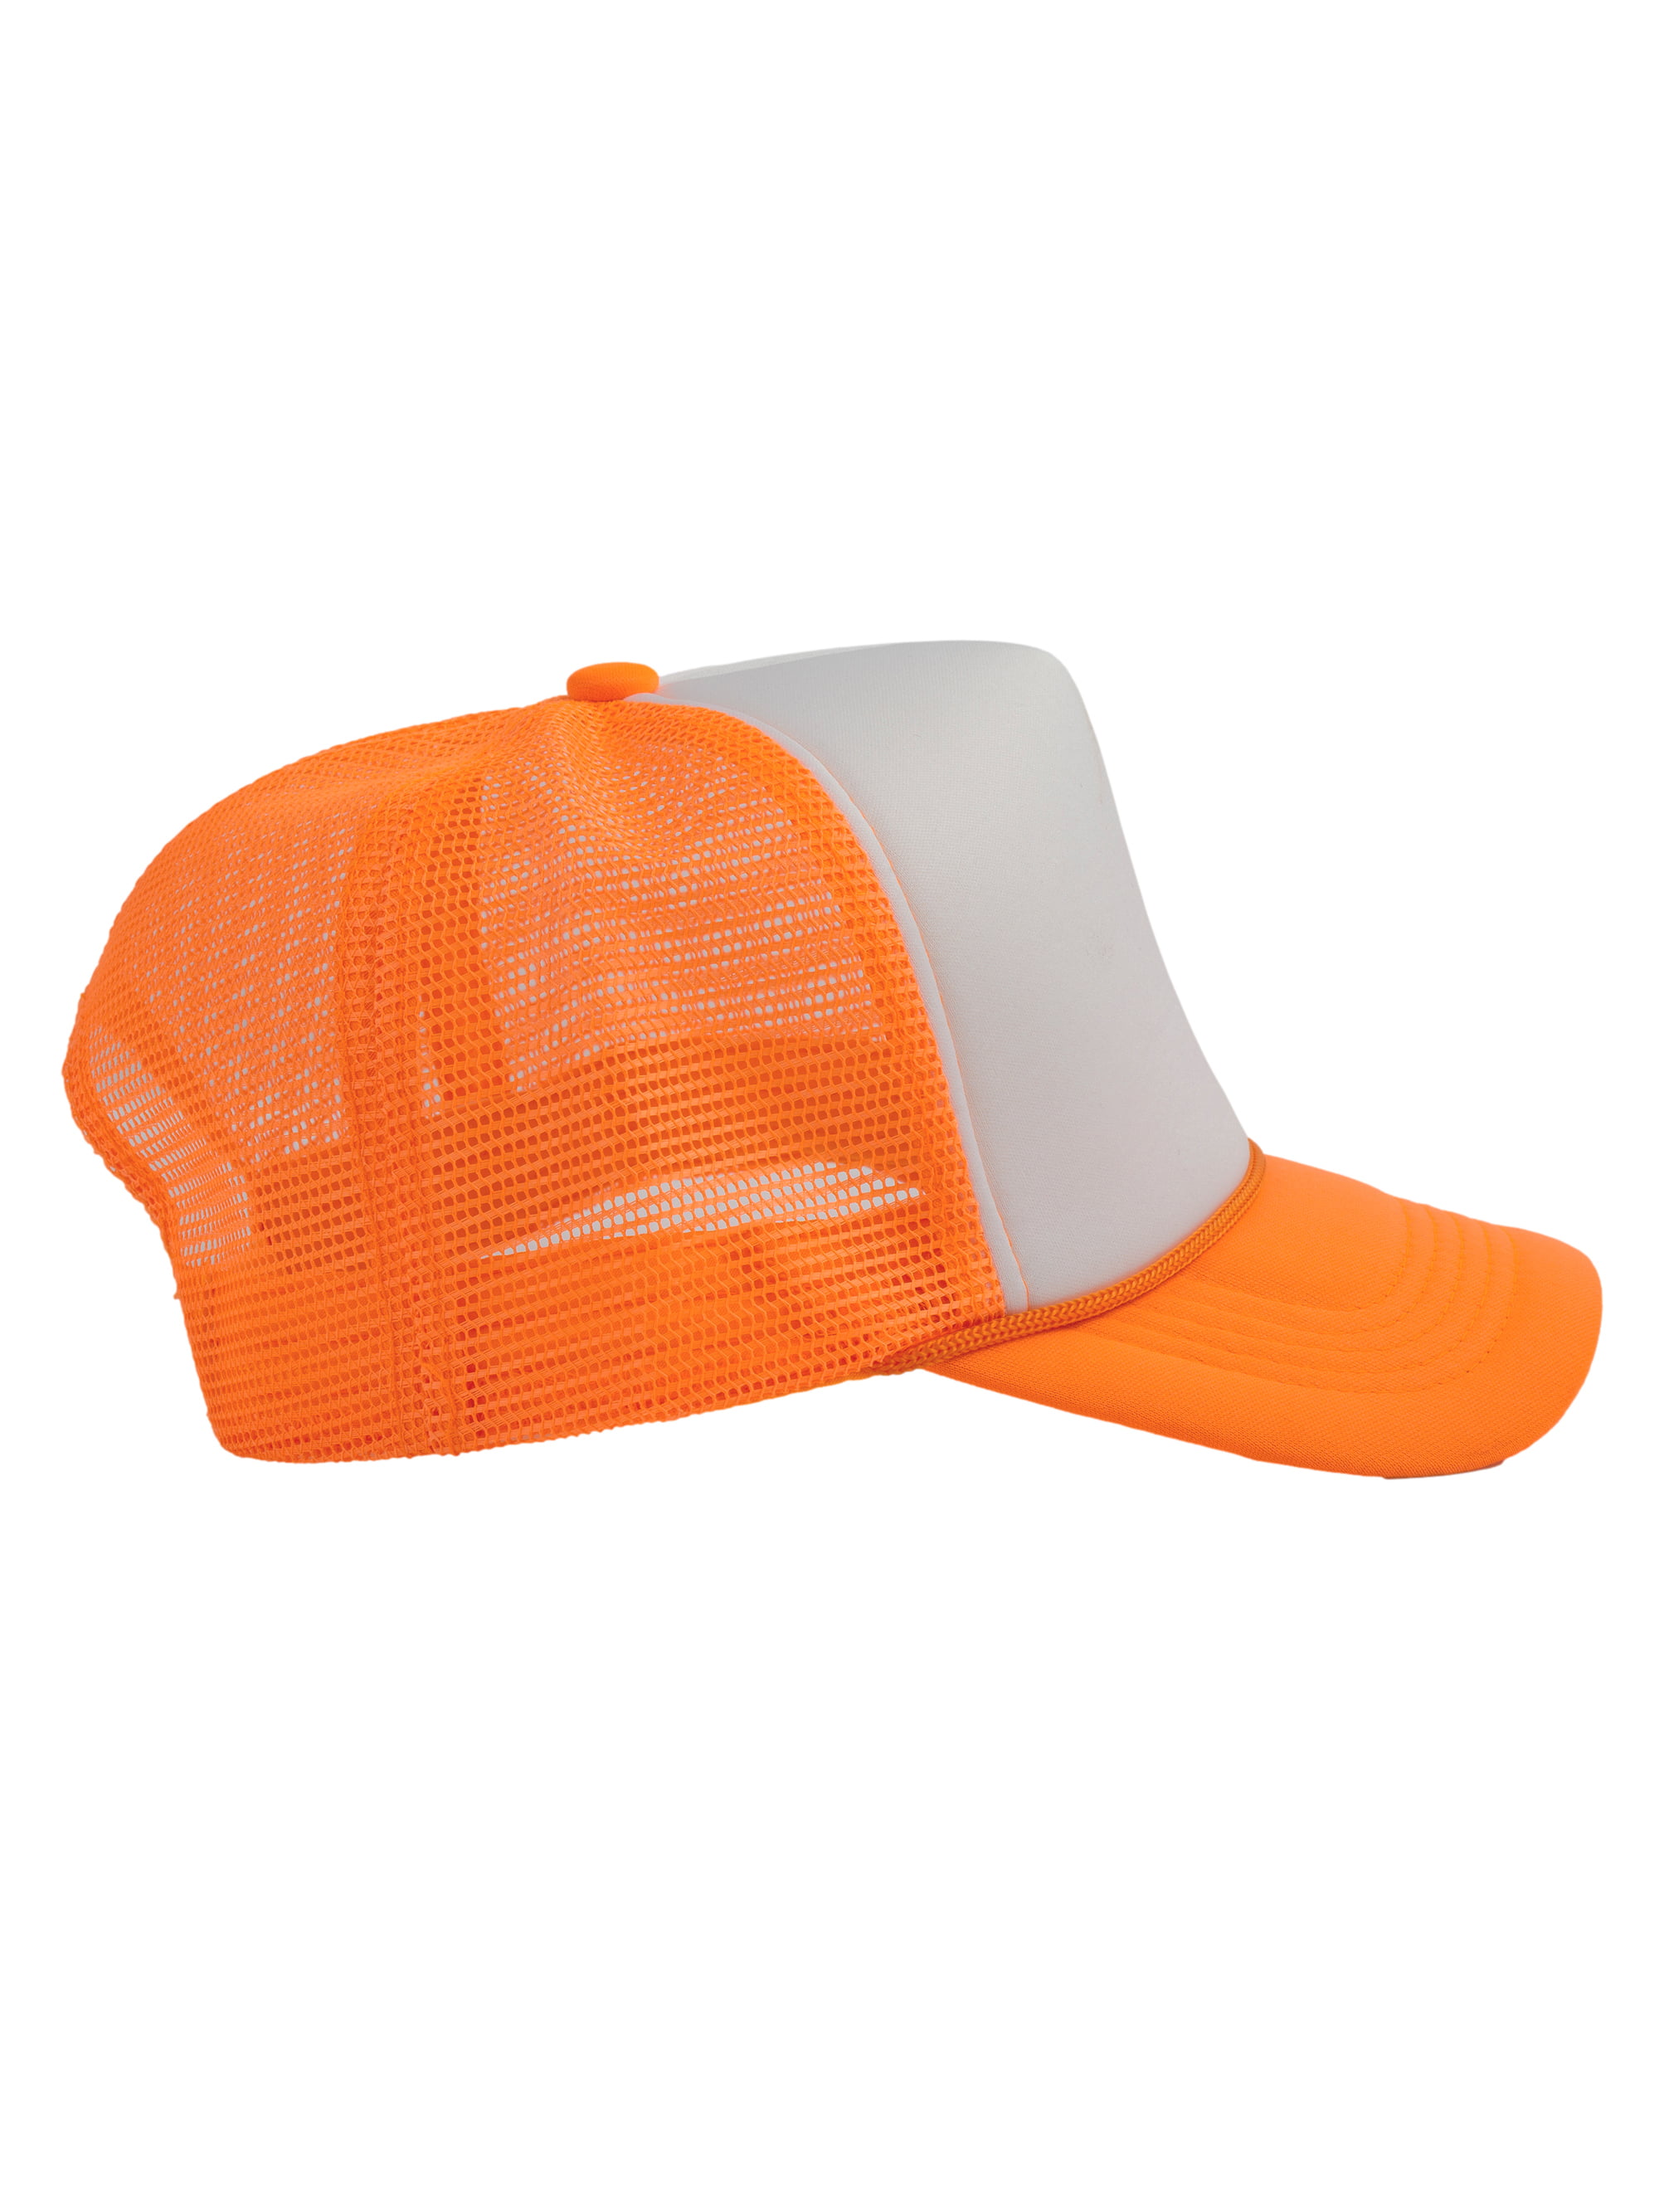 Top Headwear Blank Trucker Hats Hat - Foam Mens Mesh Snapback Orange White/Neon Trucker